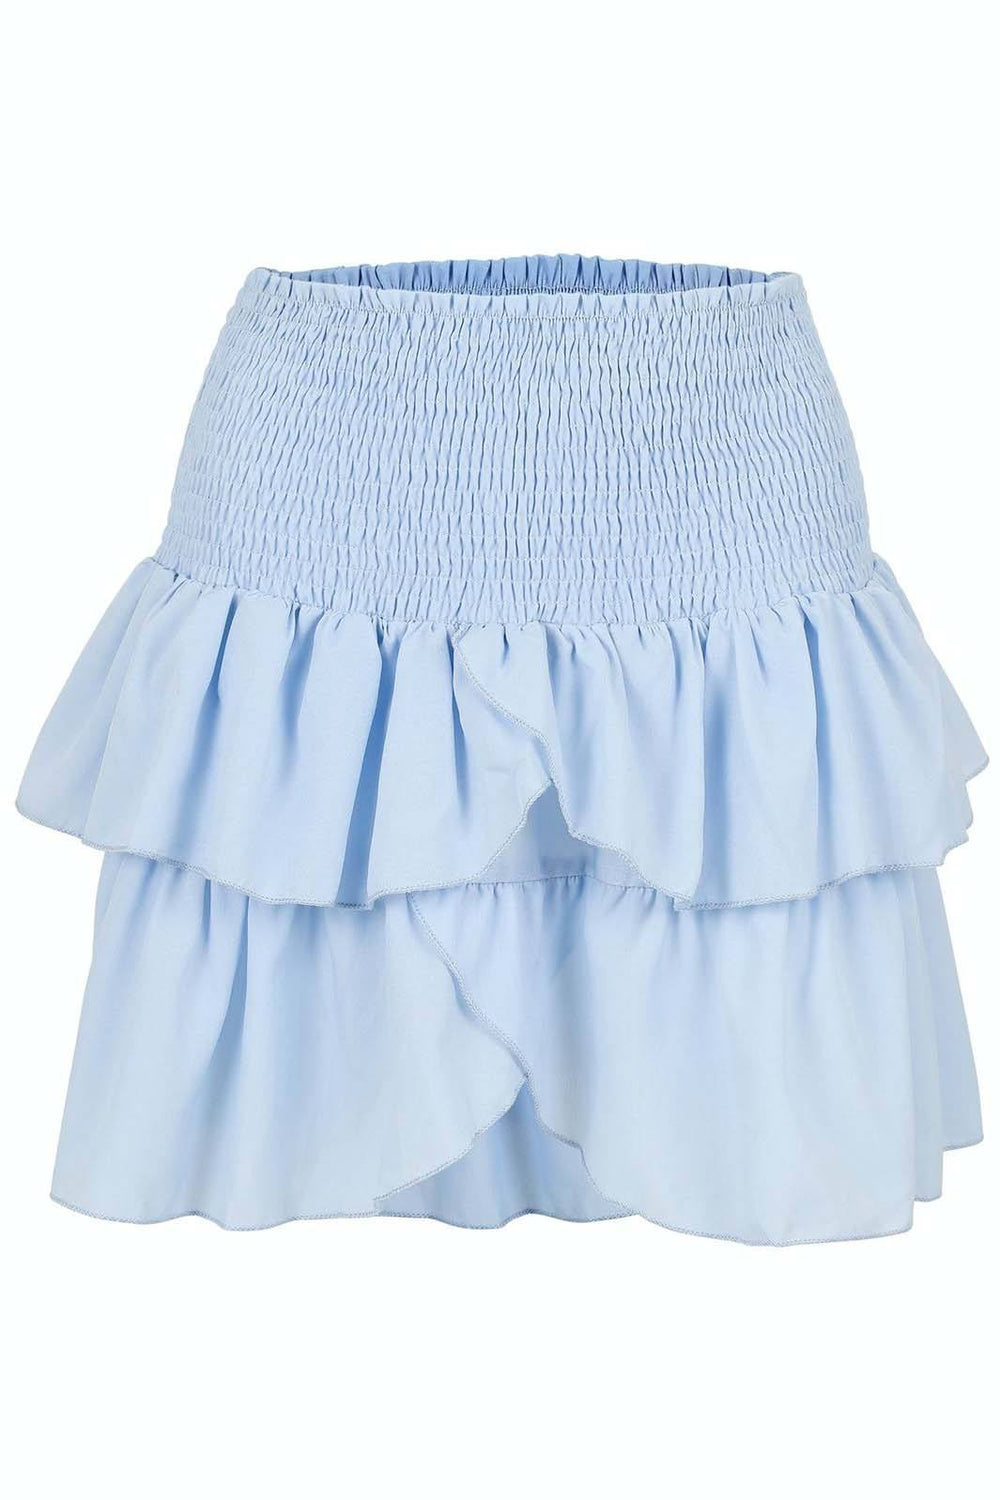 Neo Noir - Carin R Skirt - Light Blue Nederdele 